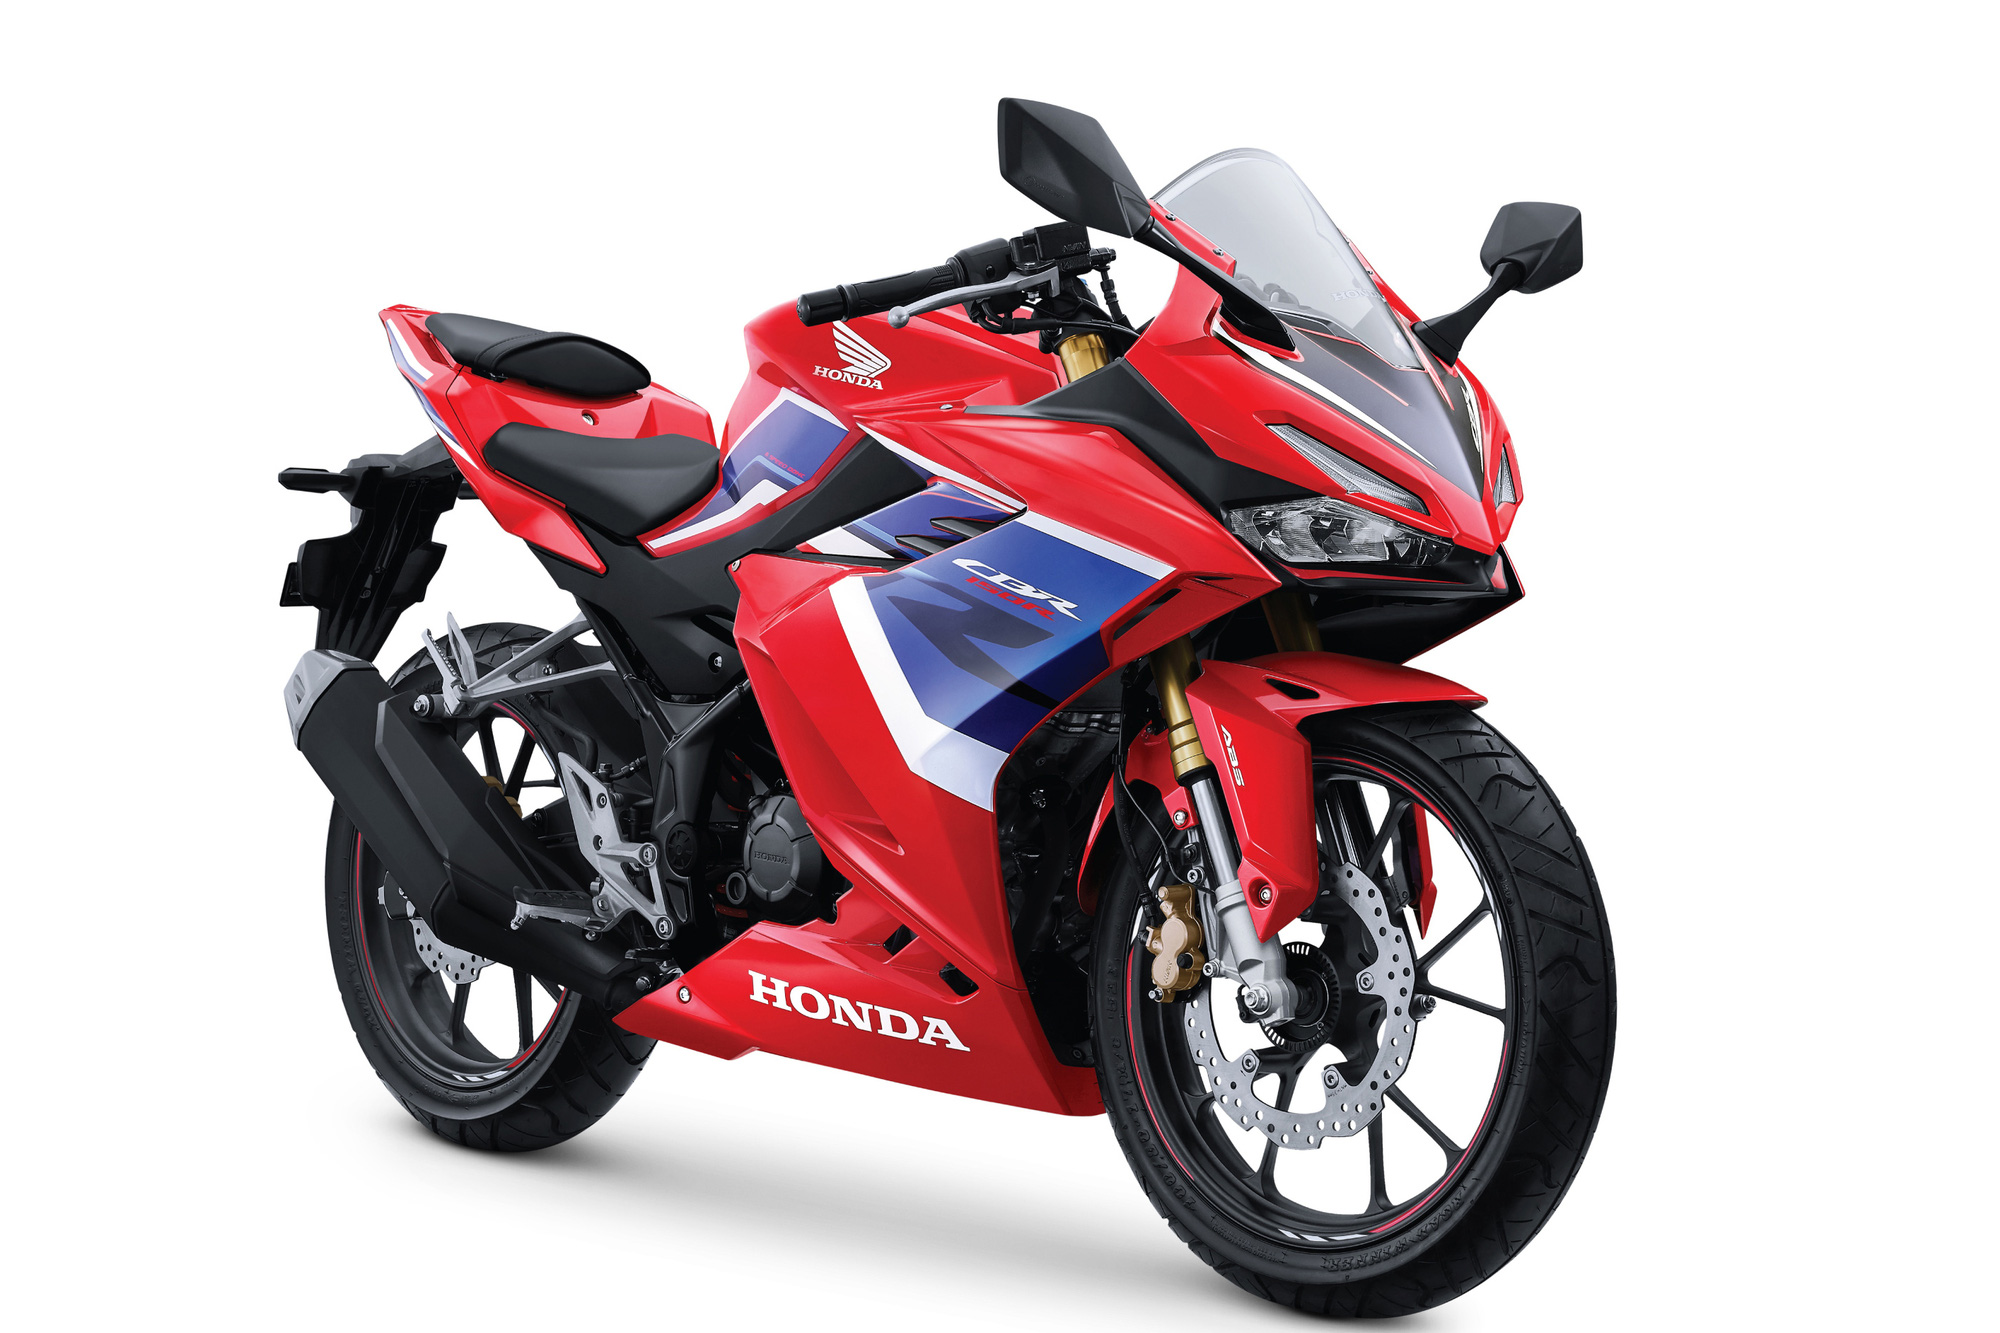 Người dùng Yamaha R15: Honda CBR150R 2021 là mẫu xe đáng mua nhưng sẽ hoàn thiện hơn nếu có thêm một số yếu tố - Ảnh 1.